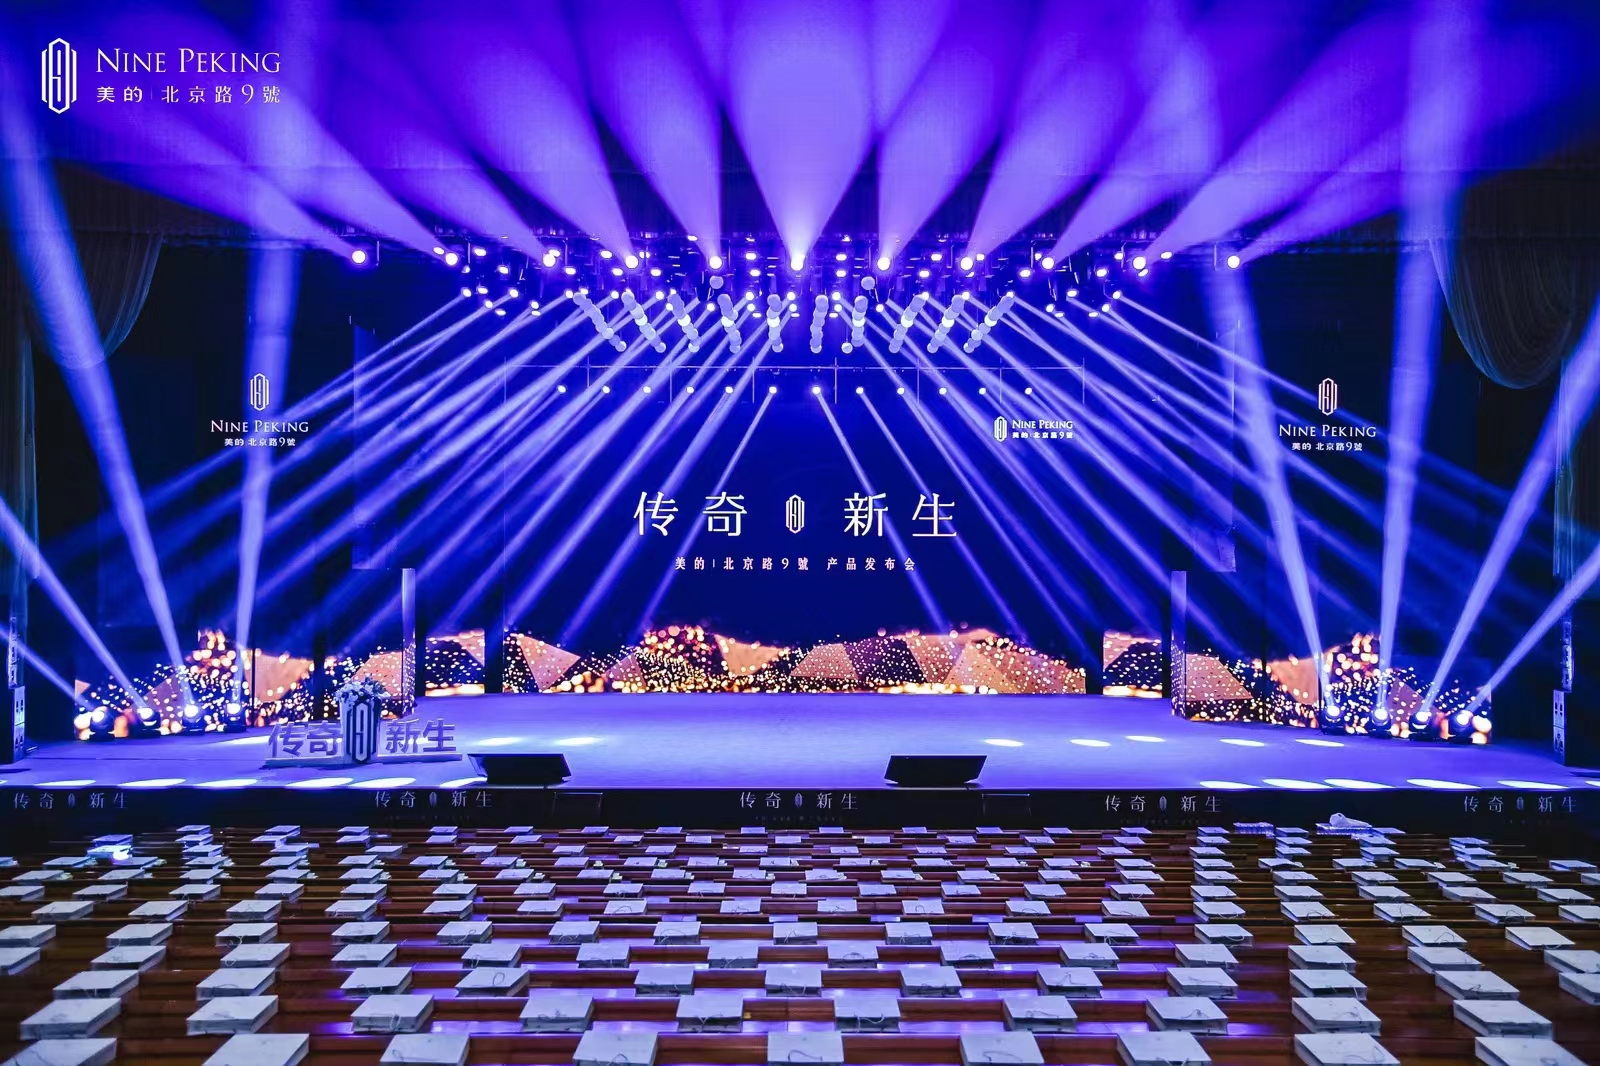 云南会议舞台搭建公司 摄影摄像服务工厂